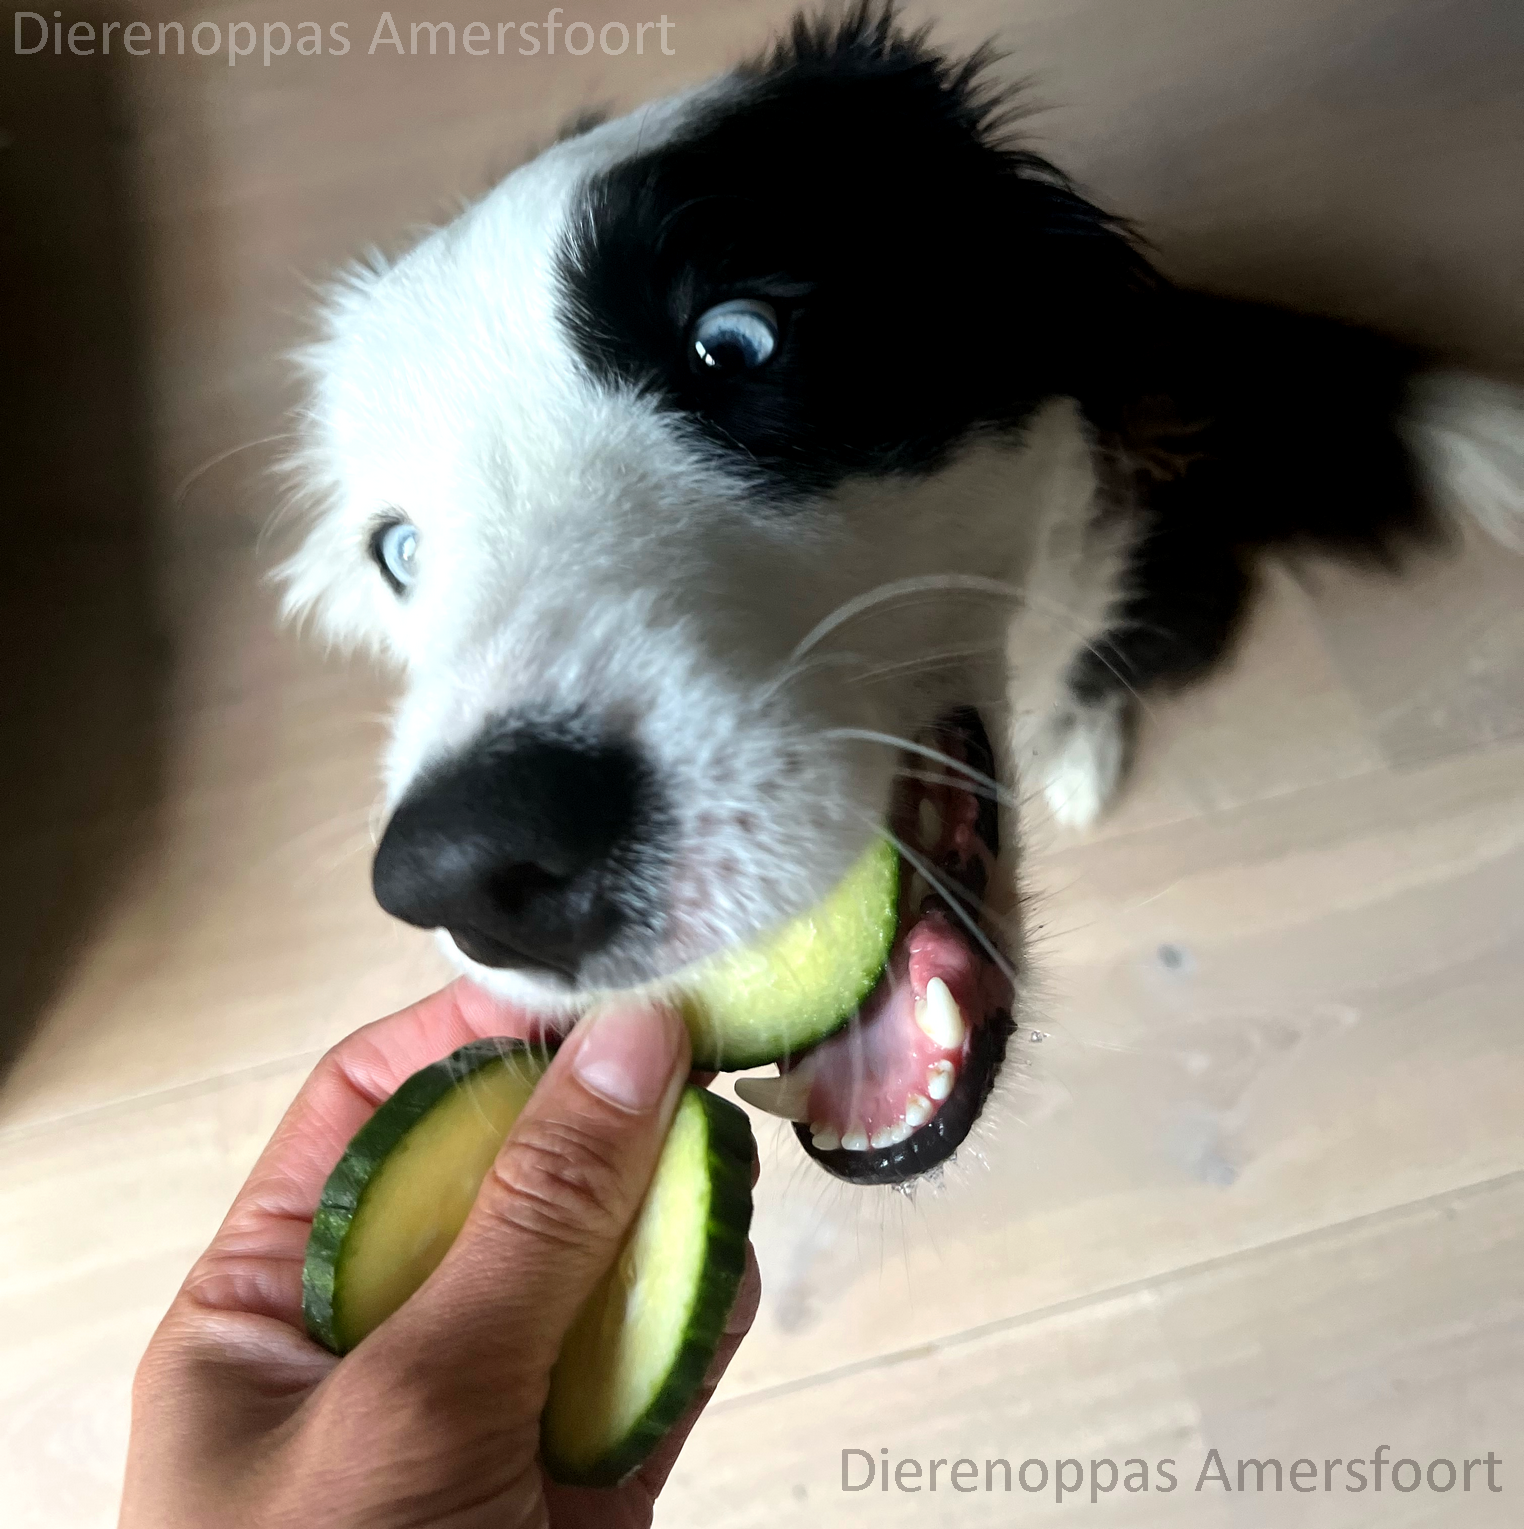 Gevaarlijk of niet: mag een hond komkommer - Dierenoppas Amersfoort bijzondere huisdier producten!